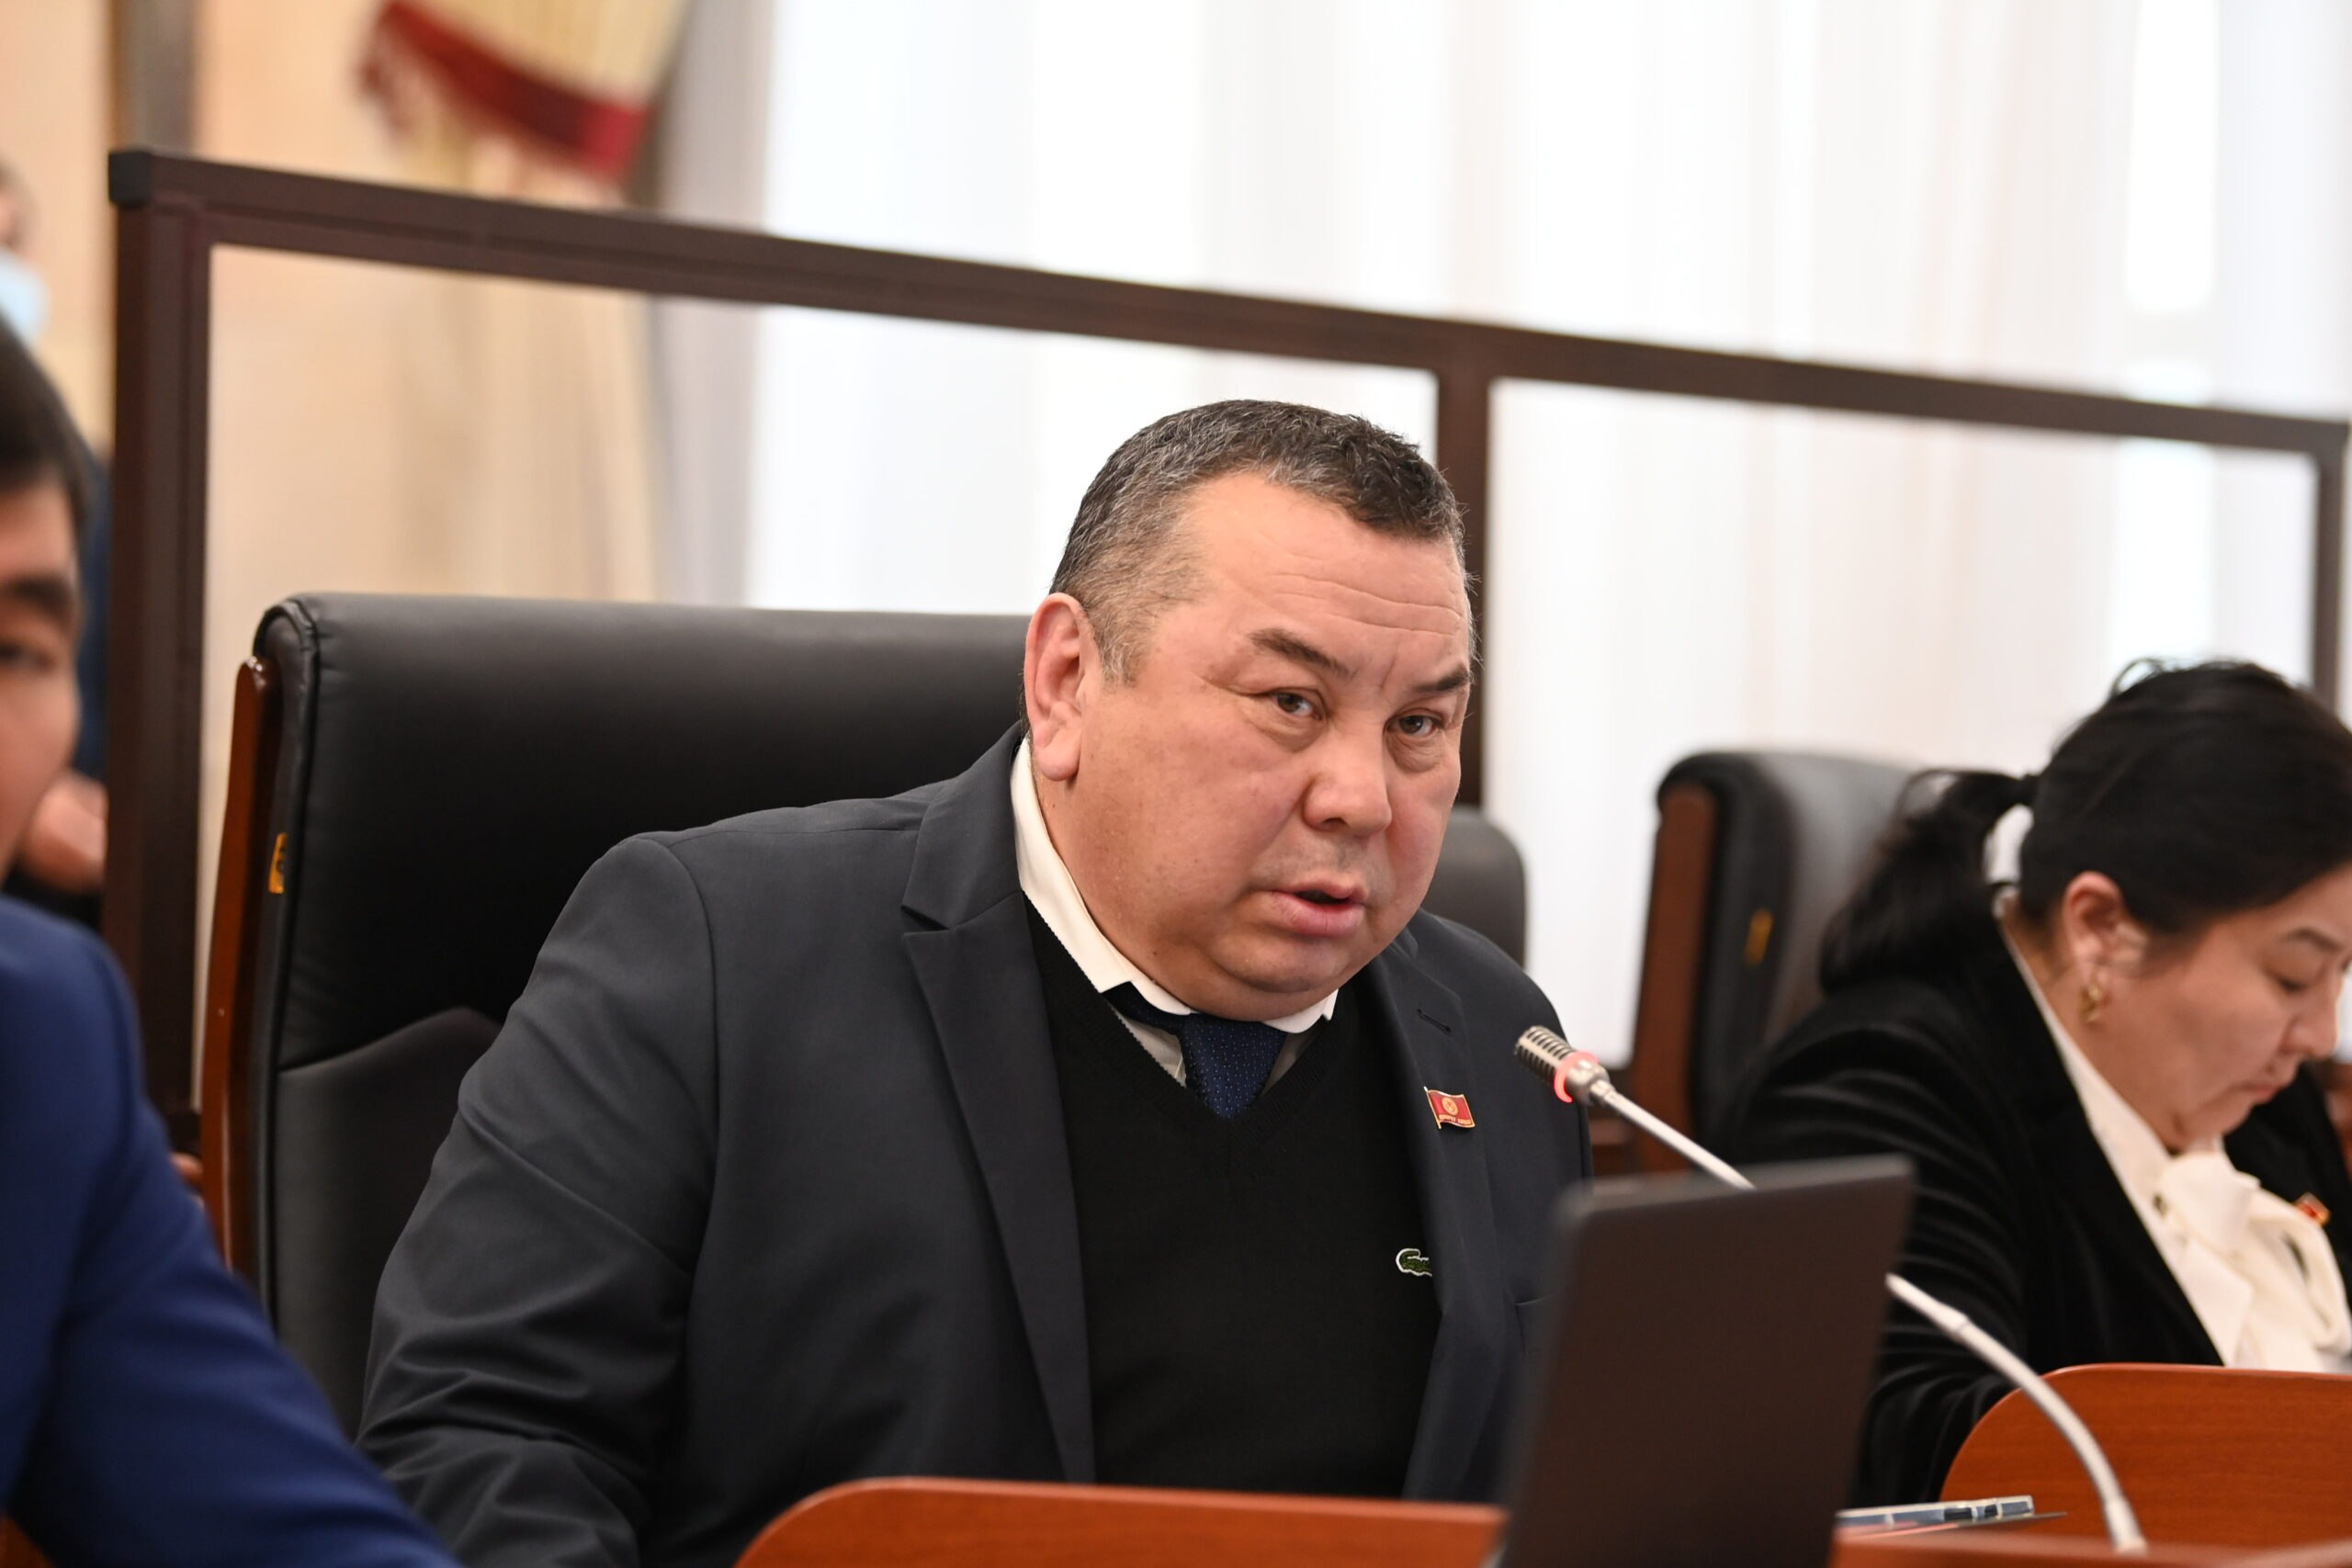 Депутат Тулобаев призвал «приструнить отморозков» блогеров, очерняющих президента